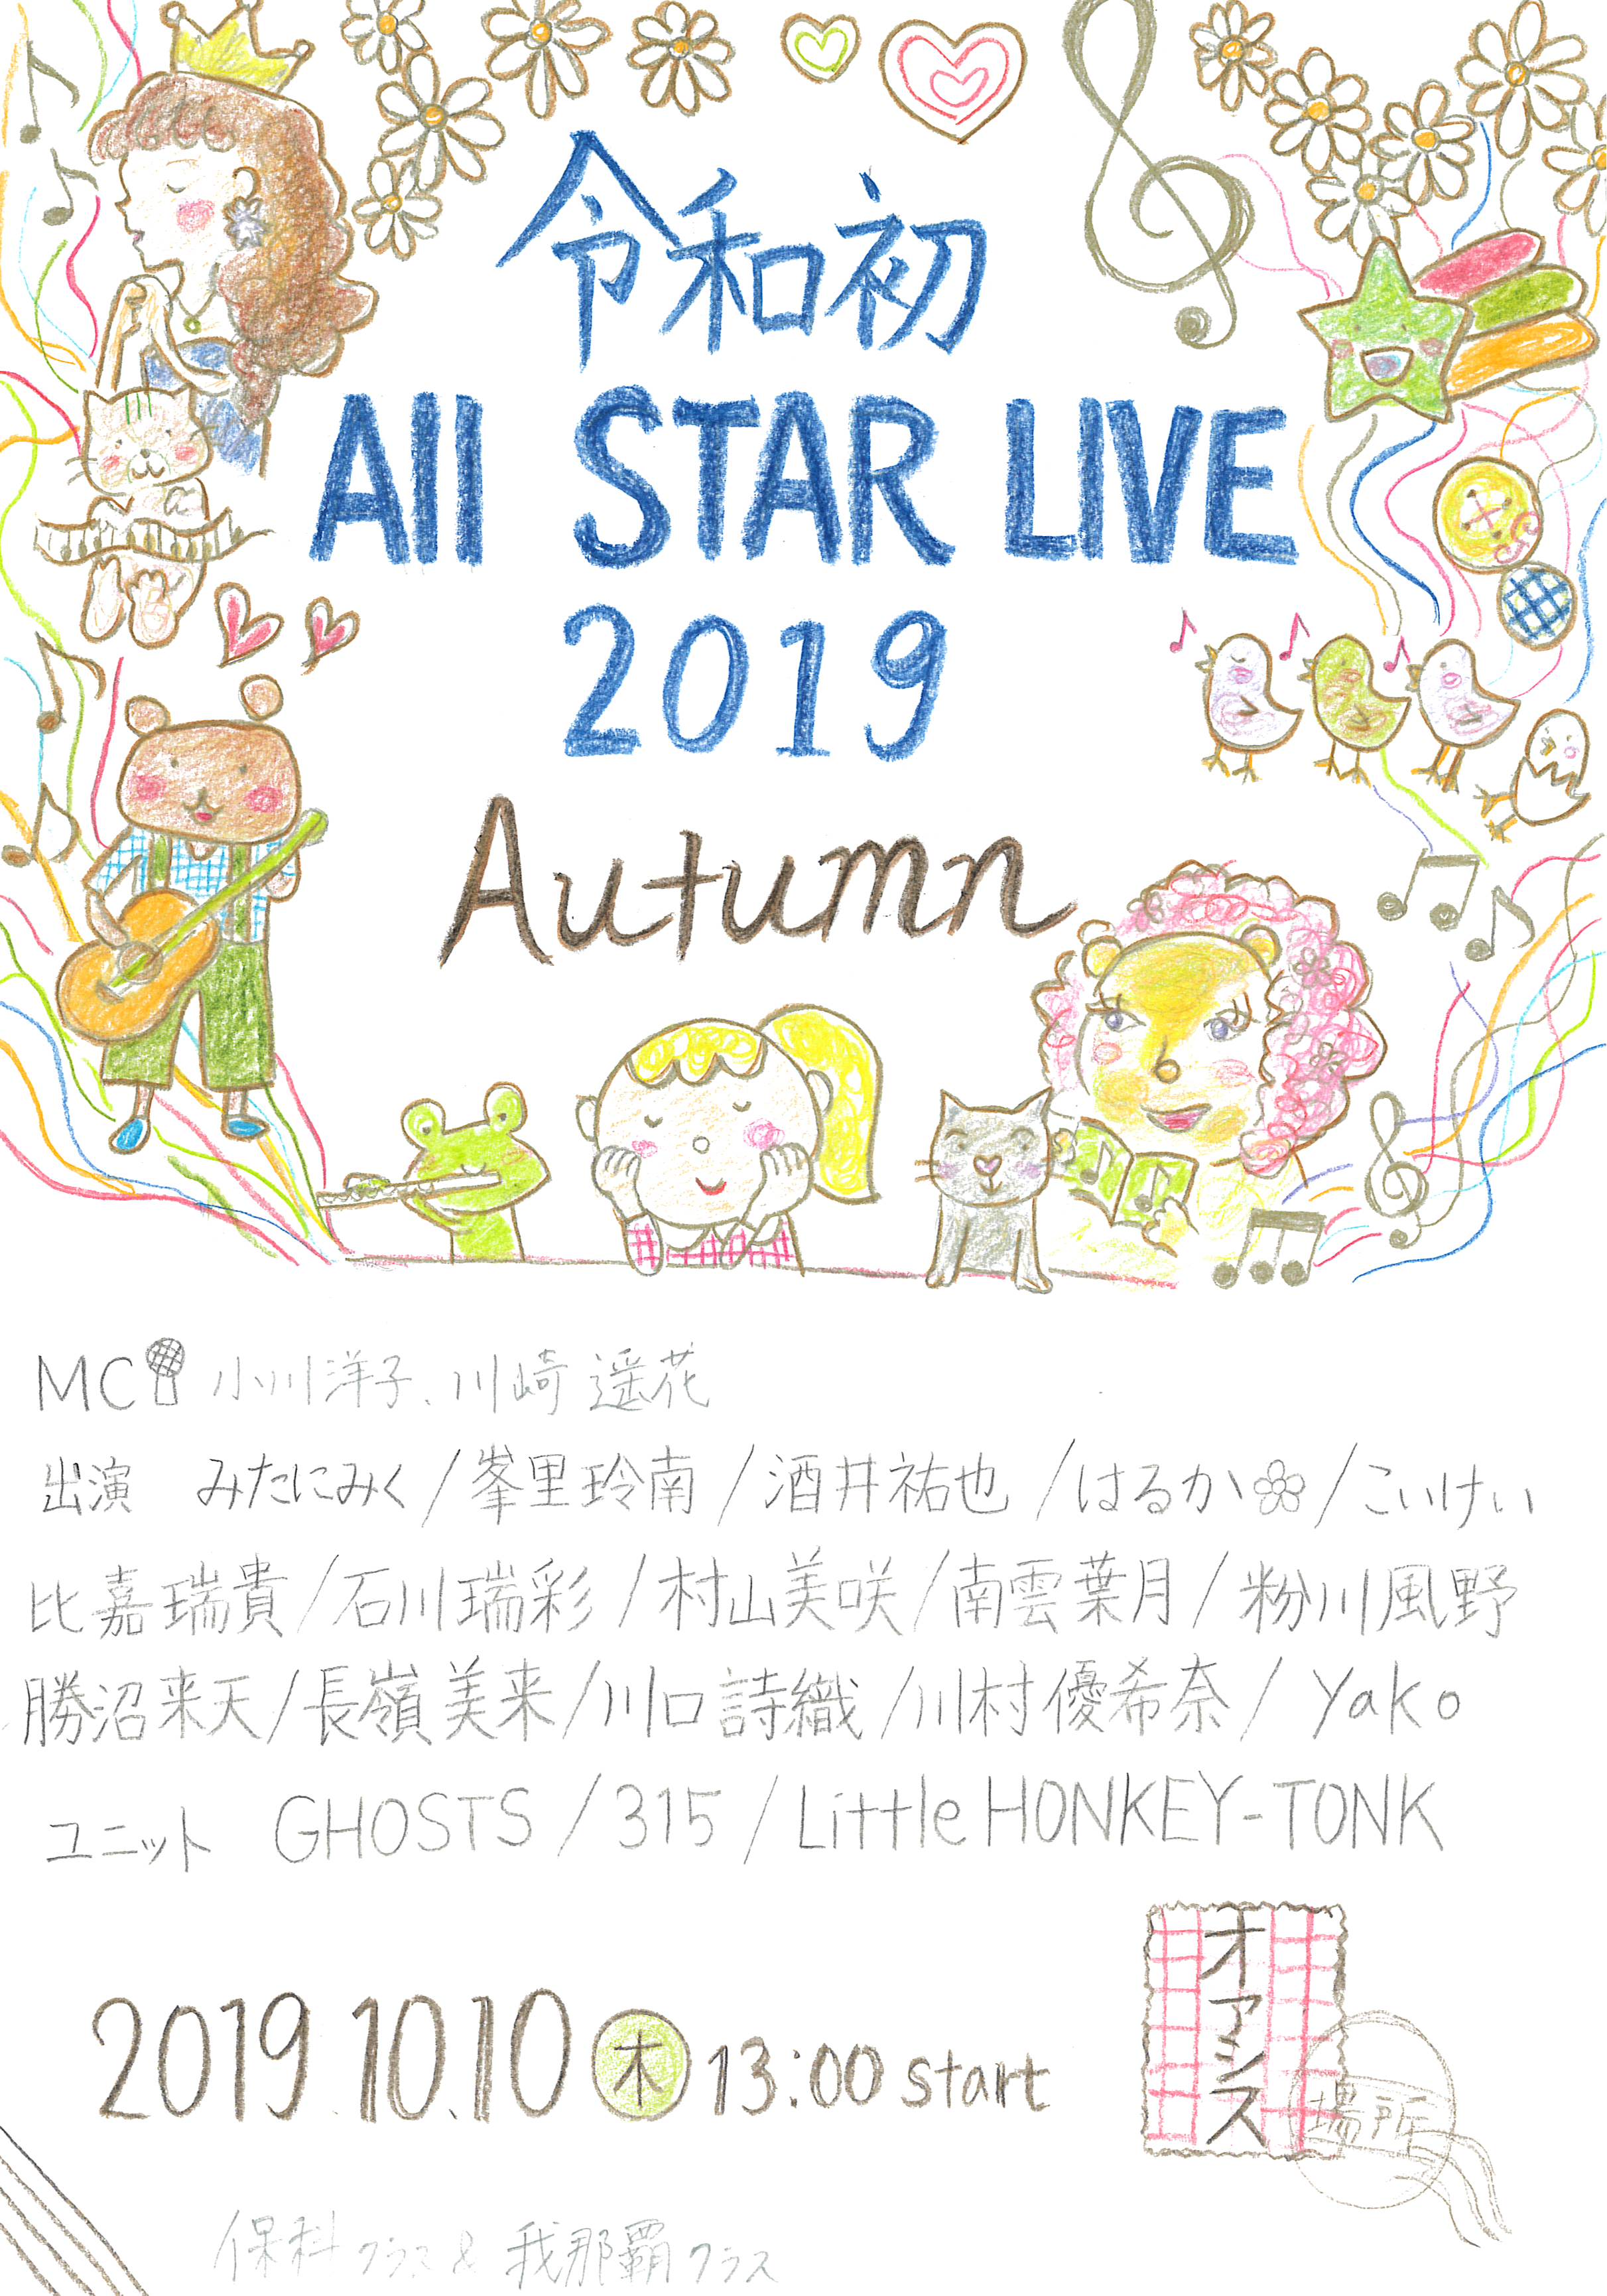 「令和初All Star Live 2019 Autumn」と書かれた手書きのフライヤー